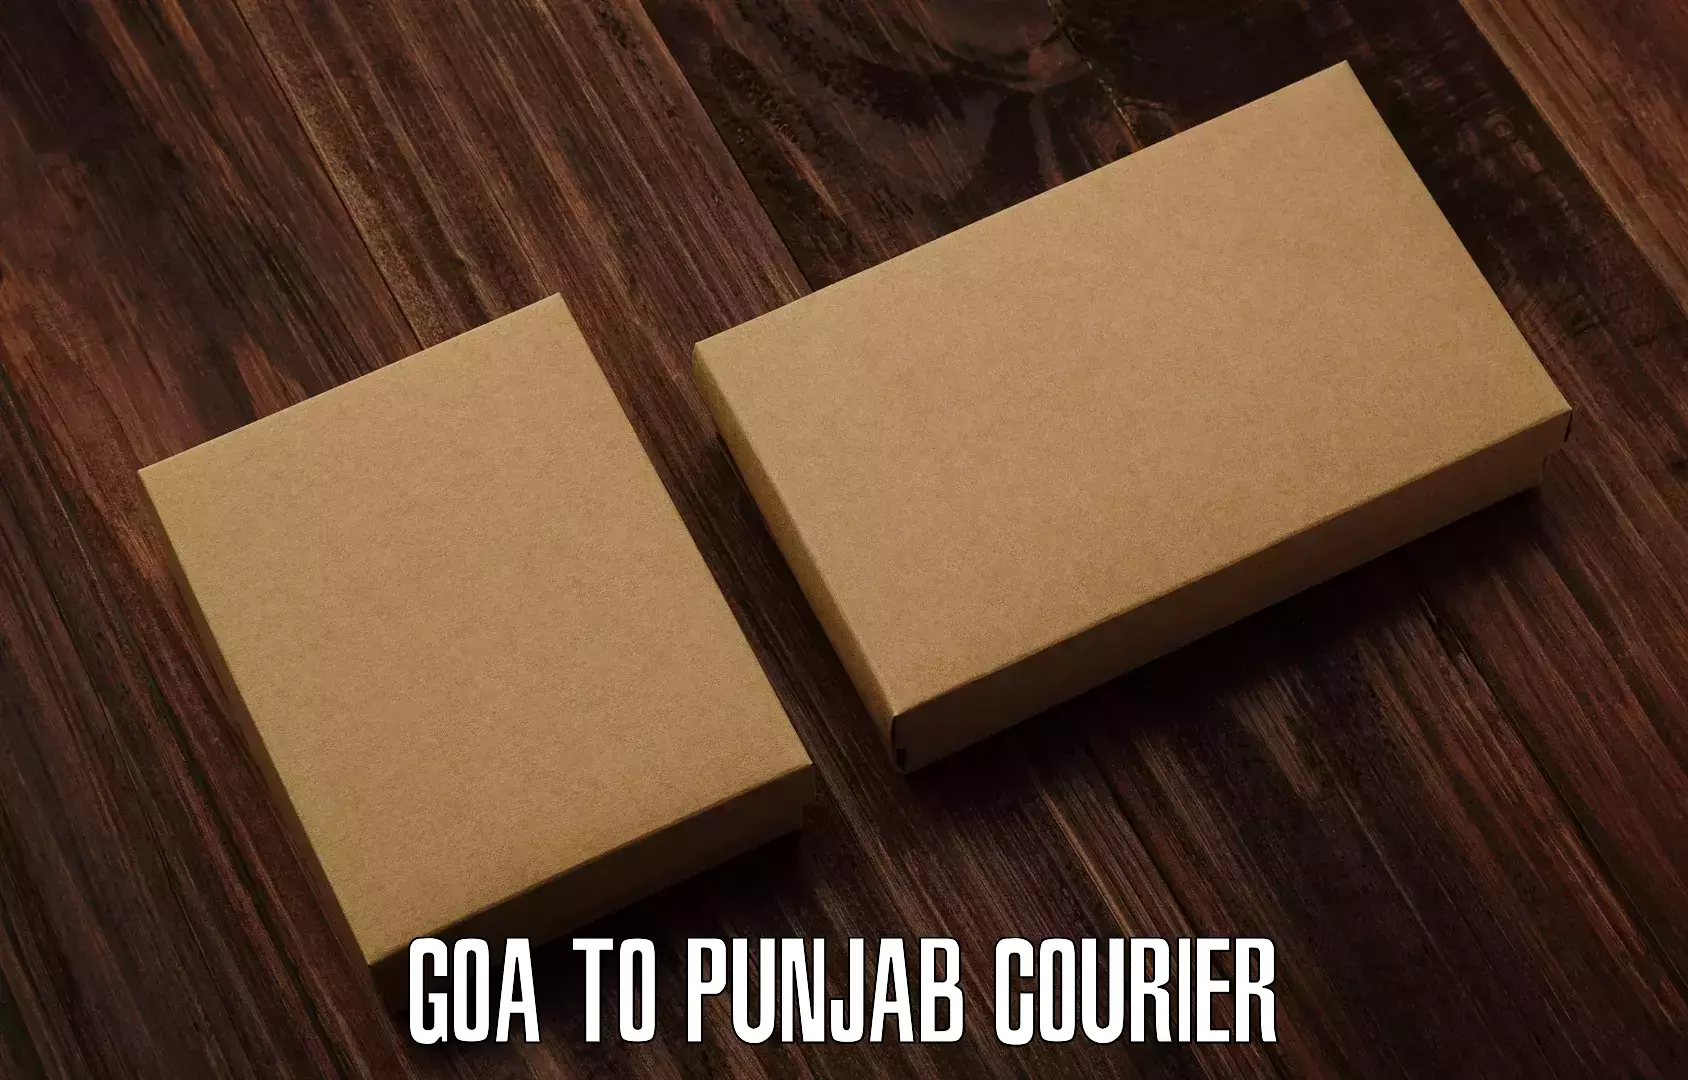 Bulk courier orders in Goa to Tarsikka